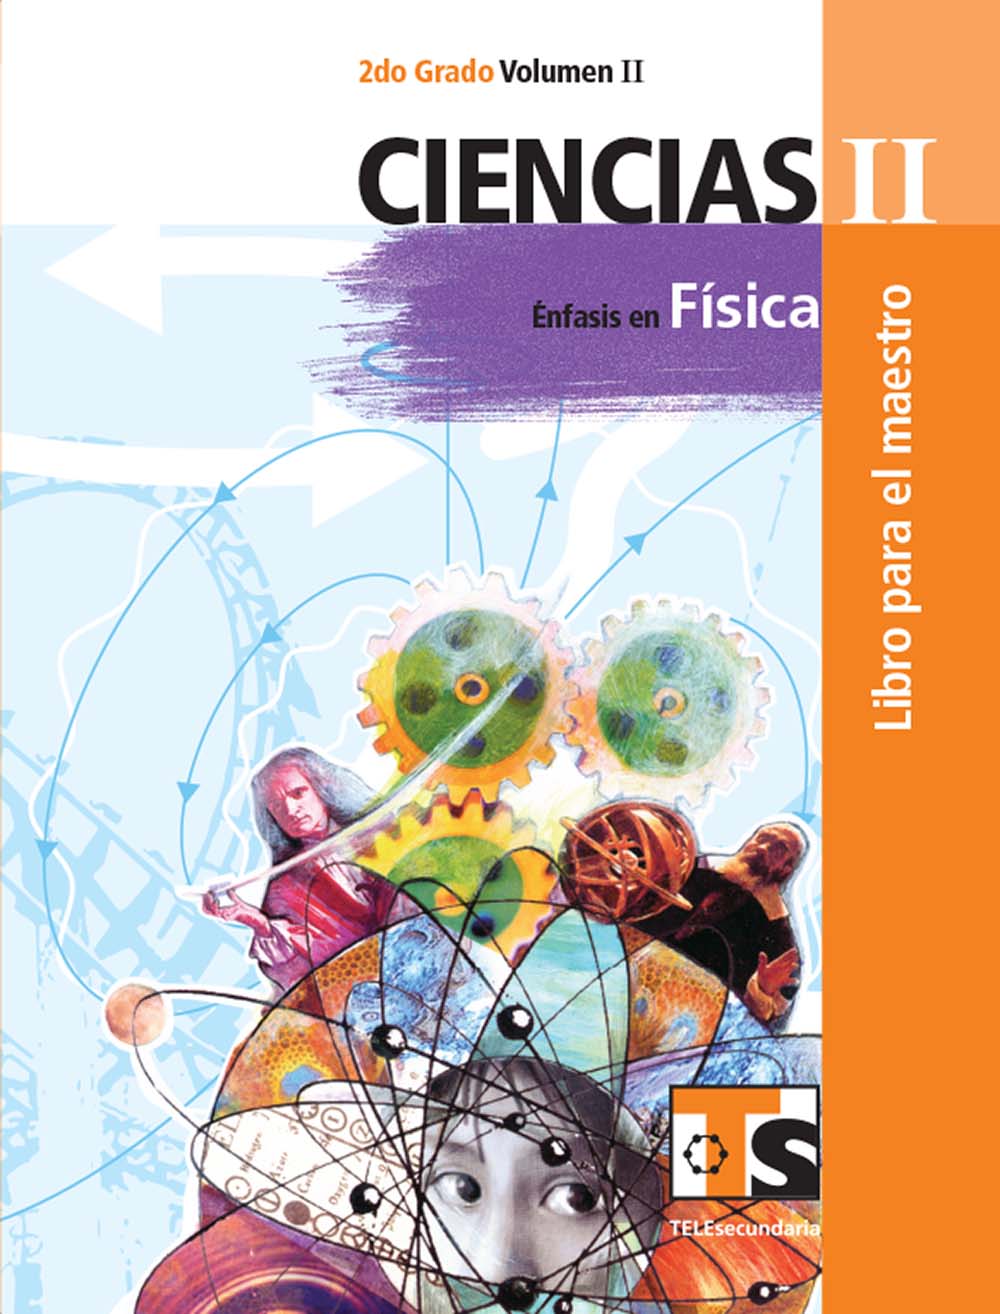 Ciencias II. Énfasis en Fisica Vol. II. Libro para el Maestro., Editorial: Secretaría de Educación Pública, Nivel: Telesecundaria, Grado: 2